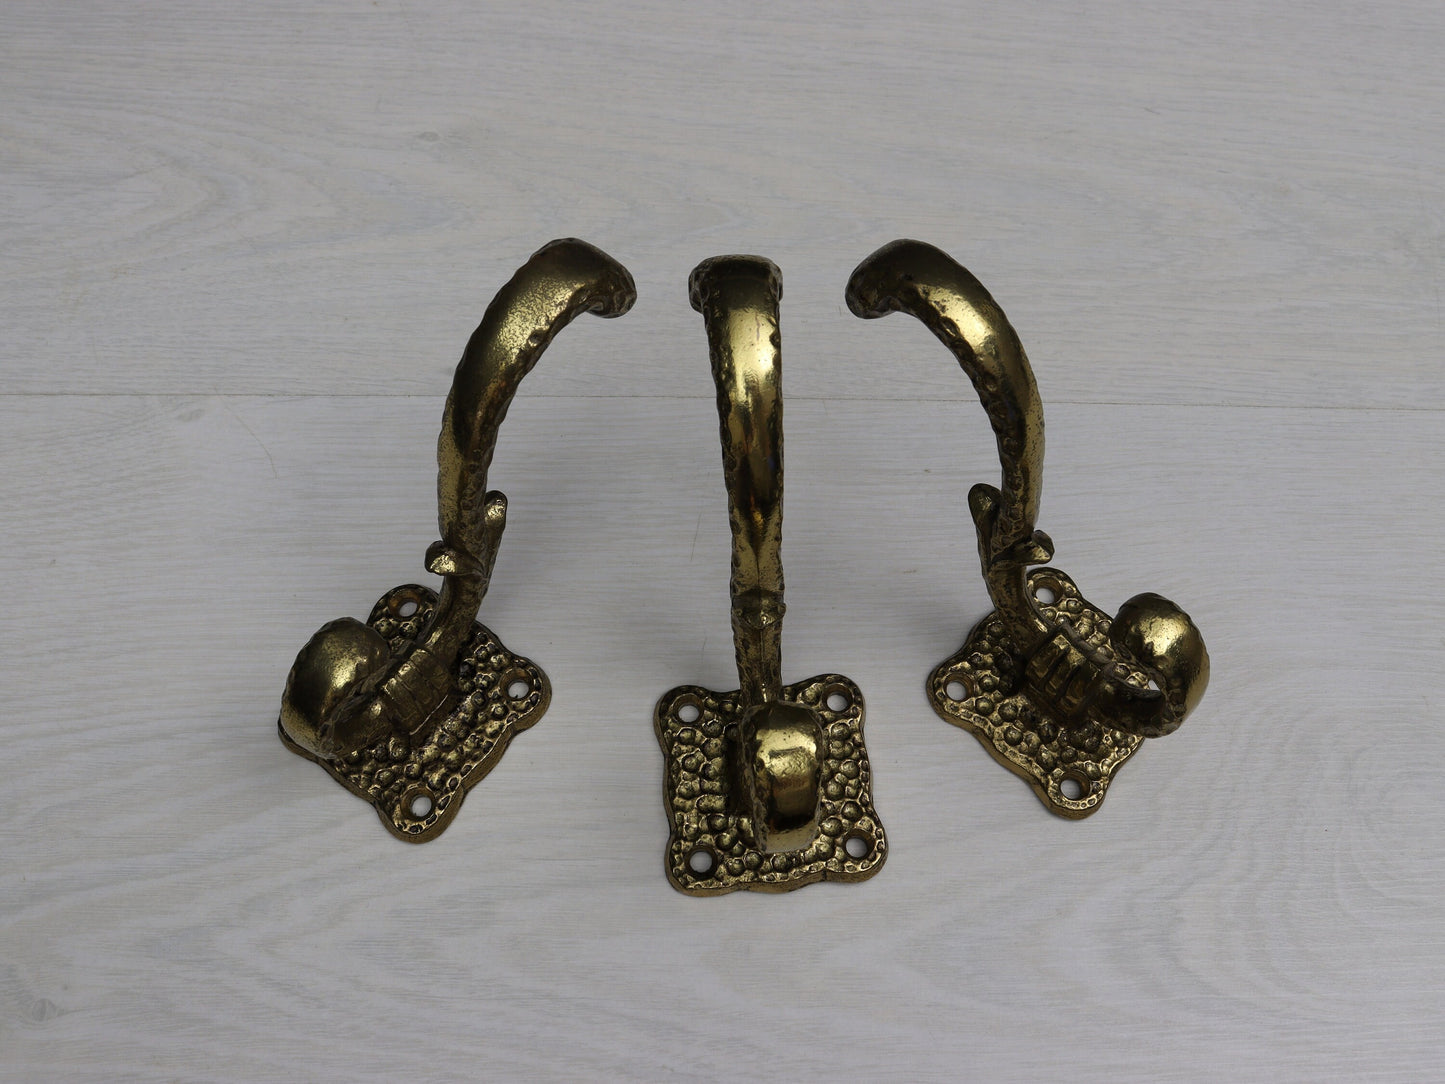 European-Brass Wall hooks-Mud Room Hooks | Decorative Bathroom Towel Hooks